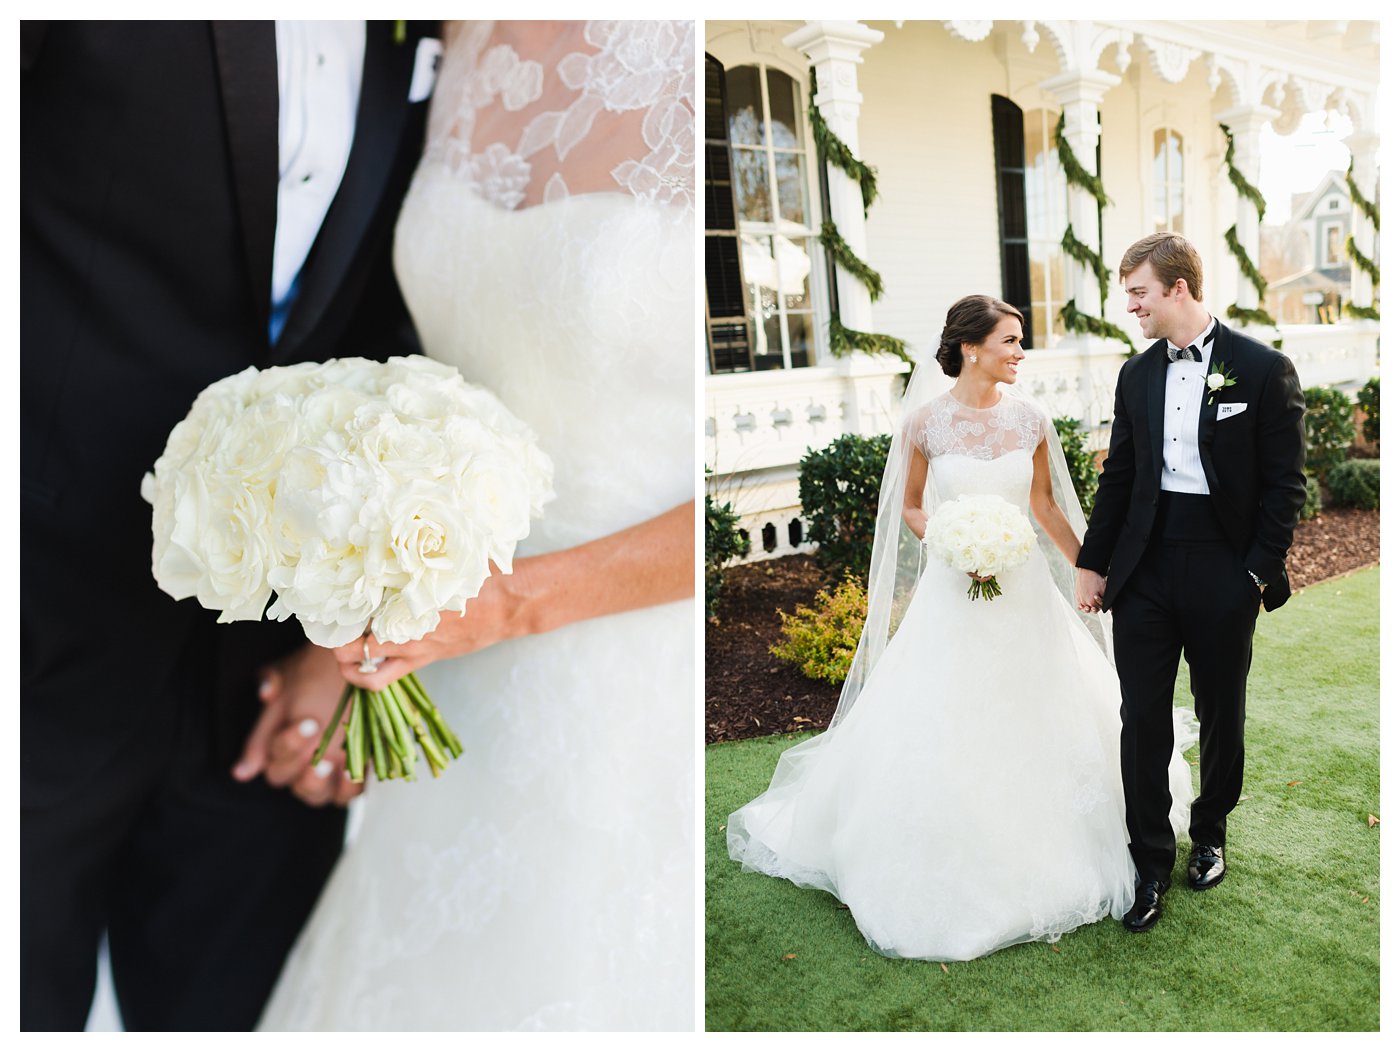 Merrimon-Wynne Wedding Photography by Amanda and Grady